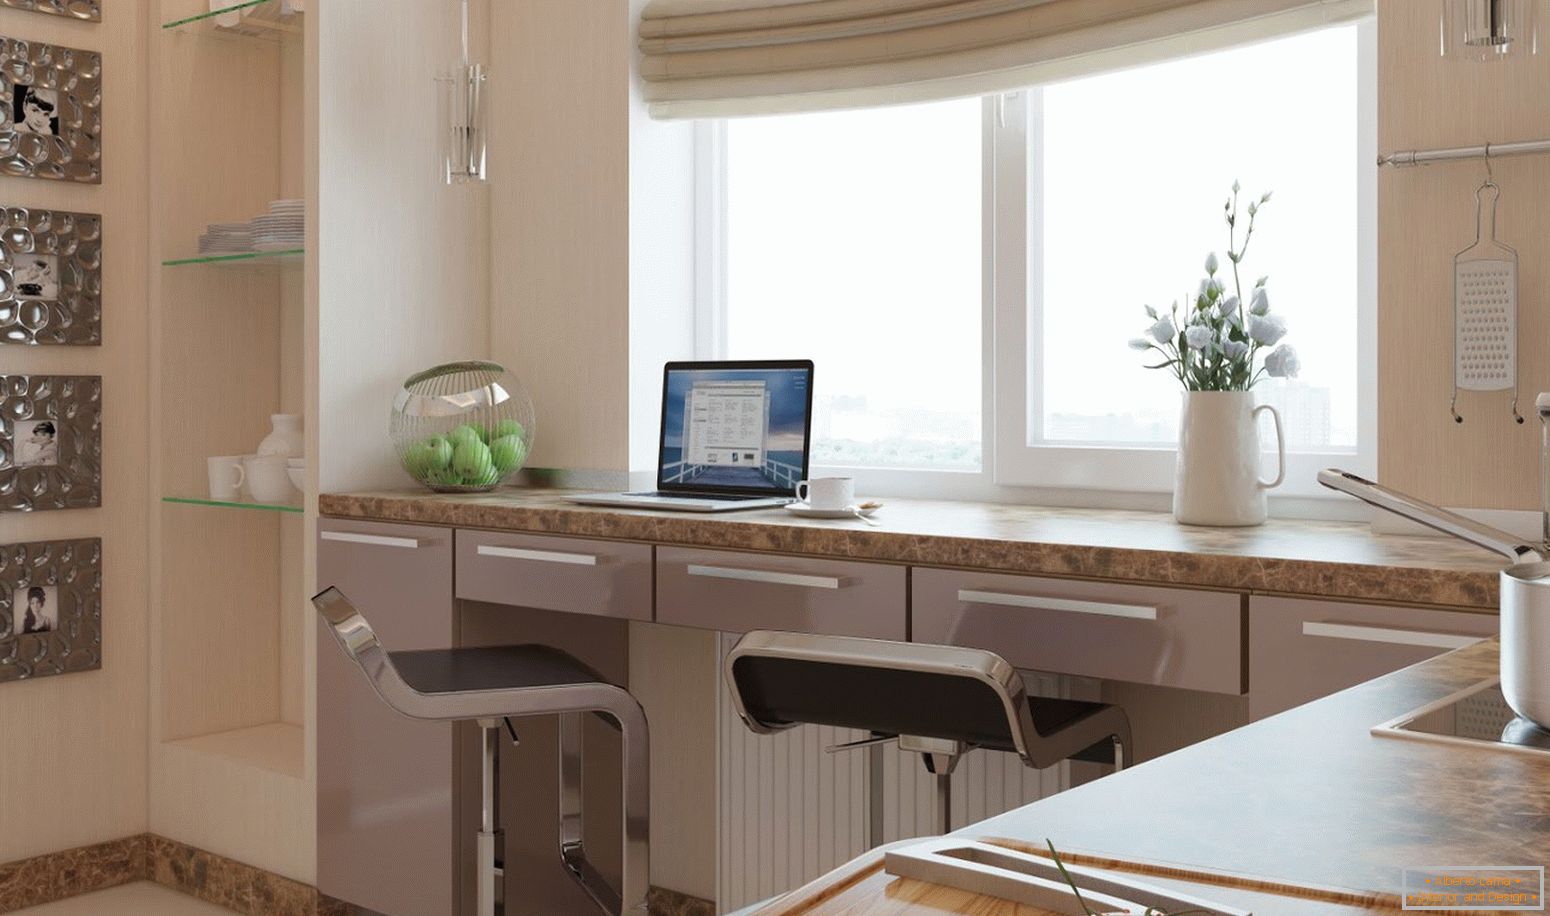 Arbeitsbereich in der Küche, kombiniert mit einer Fensterbank